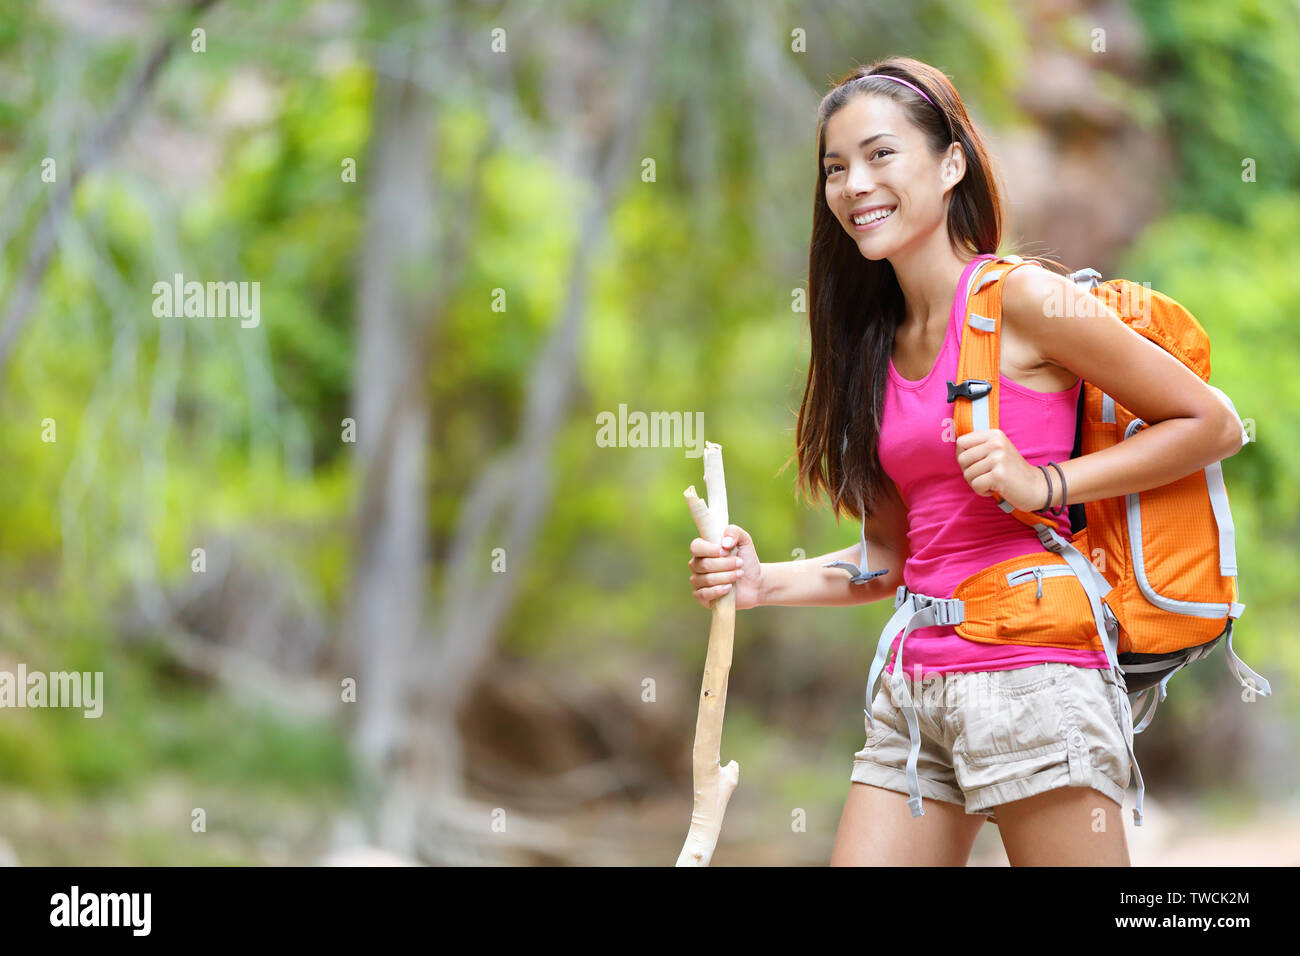 Asian woman hiker randonnées en forêt debout avec sac à dos et bâton de marche en bois smiling happy healthy active living vie de plein air. Beau young mixed race Woman modèle féminin asiatique. Banque D'Images